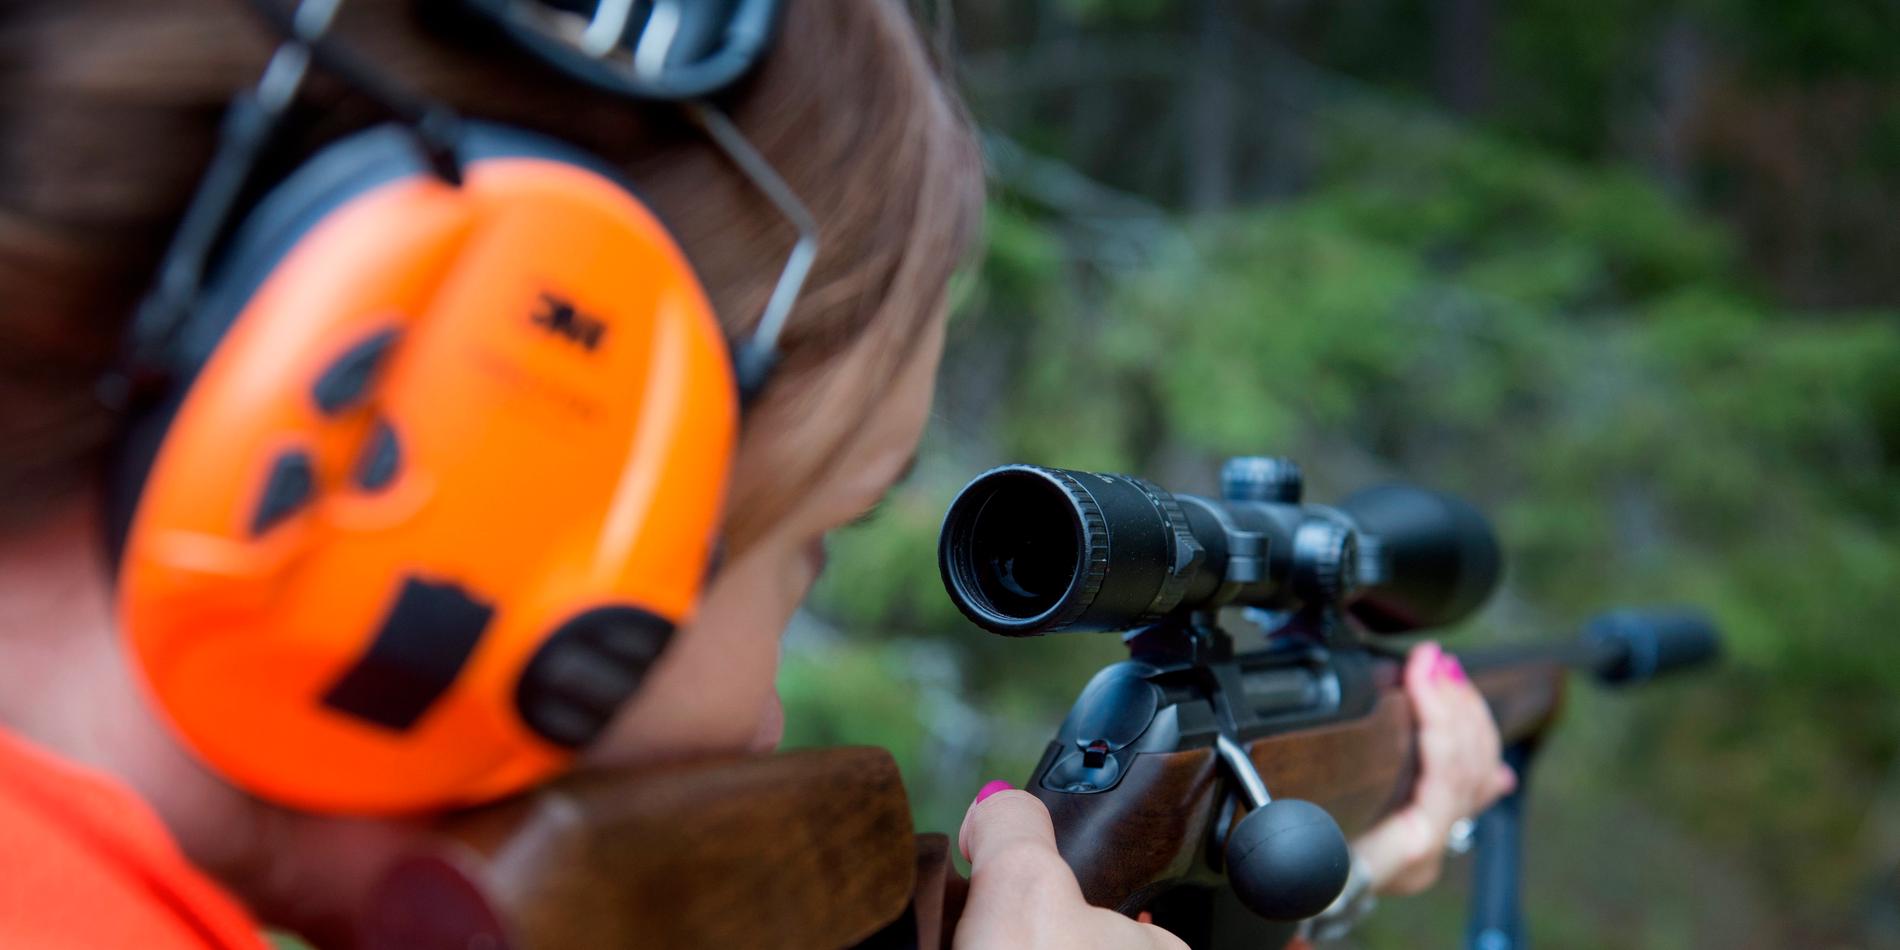 Allt fler kvinnor jagar. I Soutujärvi viltvårdsområde är andelen kvinnor nu 30 procent.